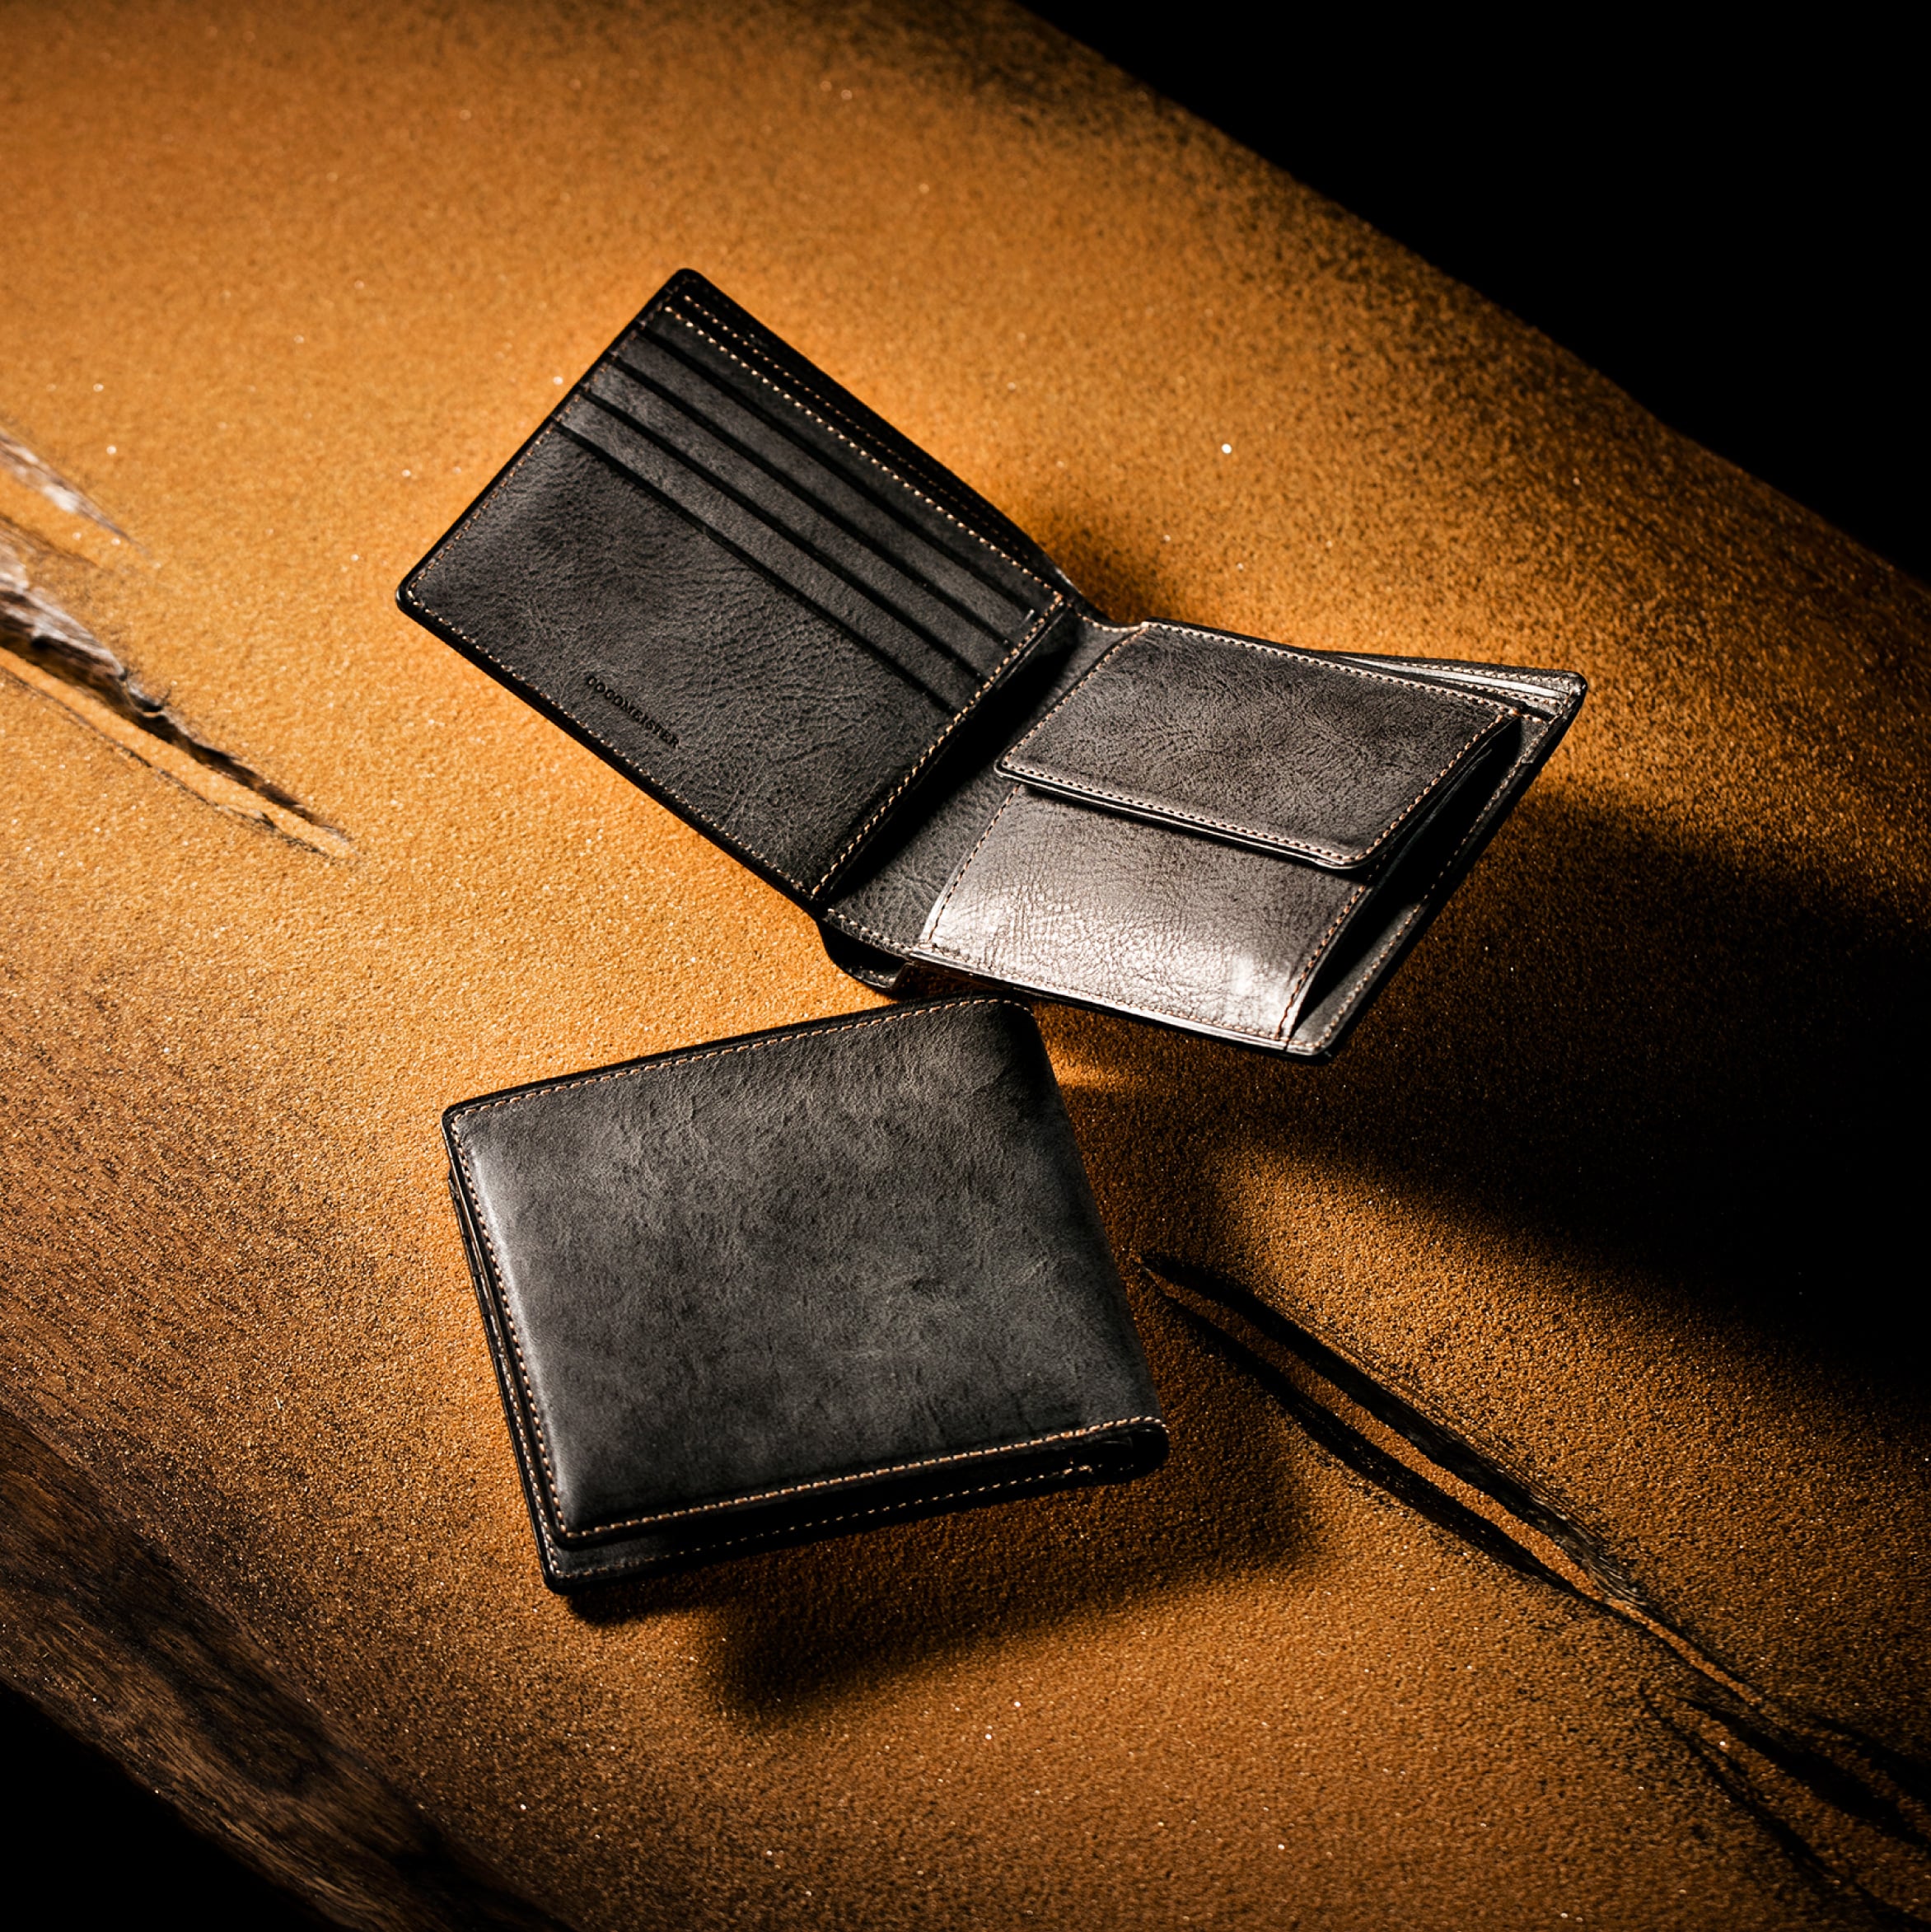 カルドミラージュ 二つ折り財布 | ココマイスター公式サイト